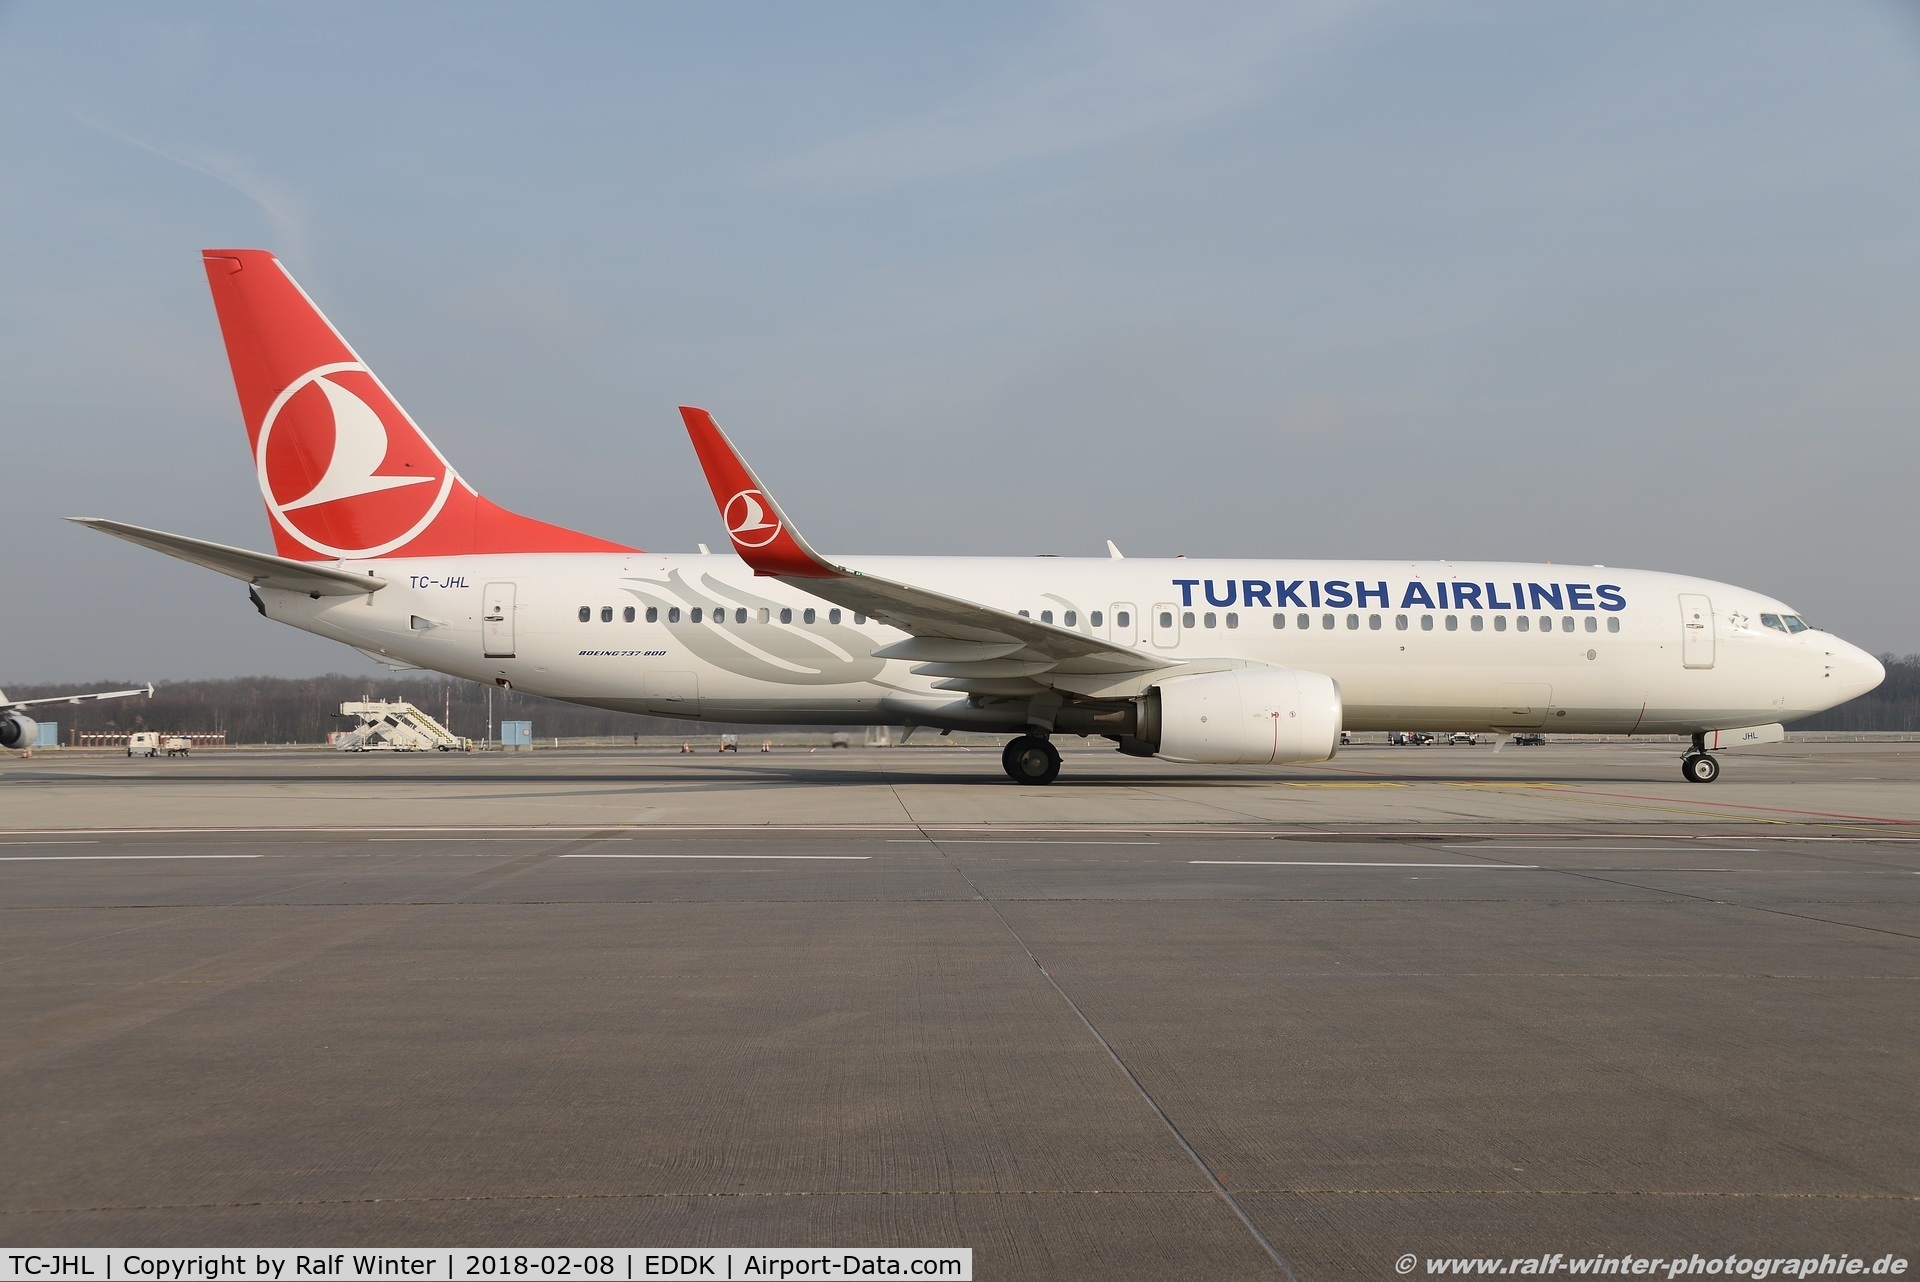 TC-JHL, 2011 Boeing 737-8F2 C/N 40976, Boeing 737-8F2(W) - TK THY Turkish Airlines 'Ünye' - 40976 - TC-JHL - 08.02.2018 - CGN